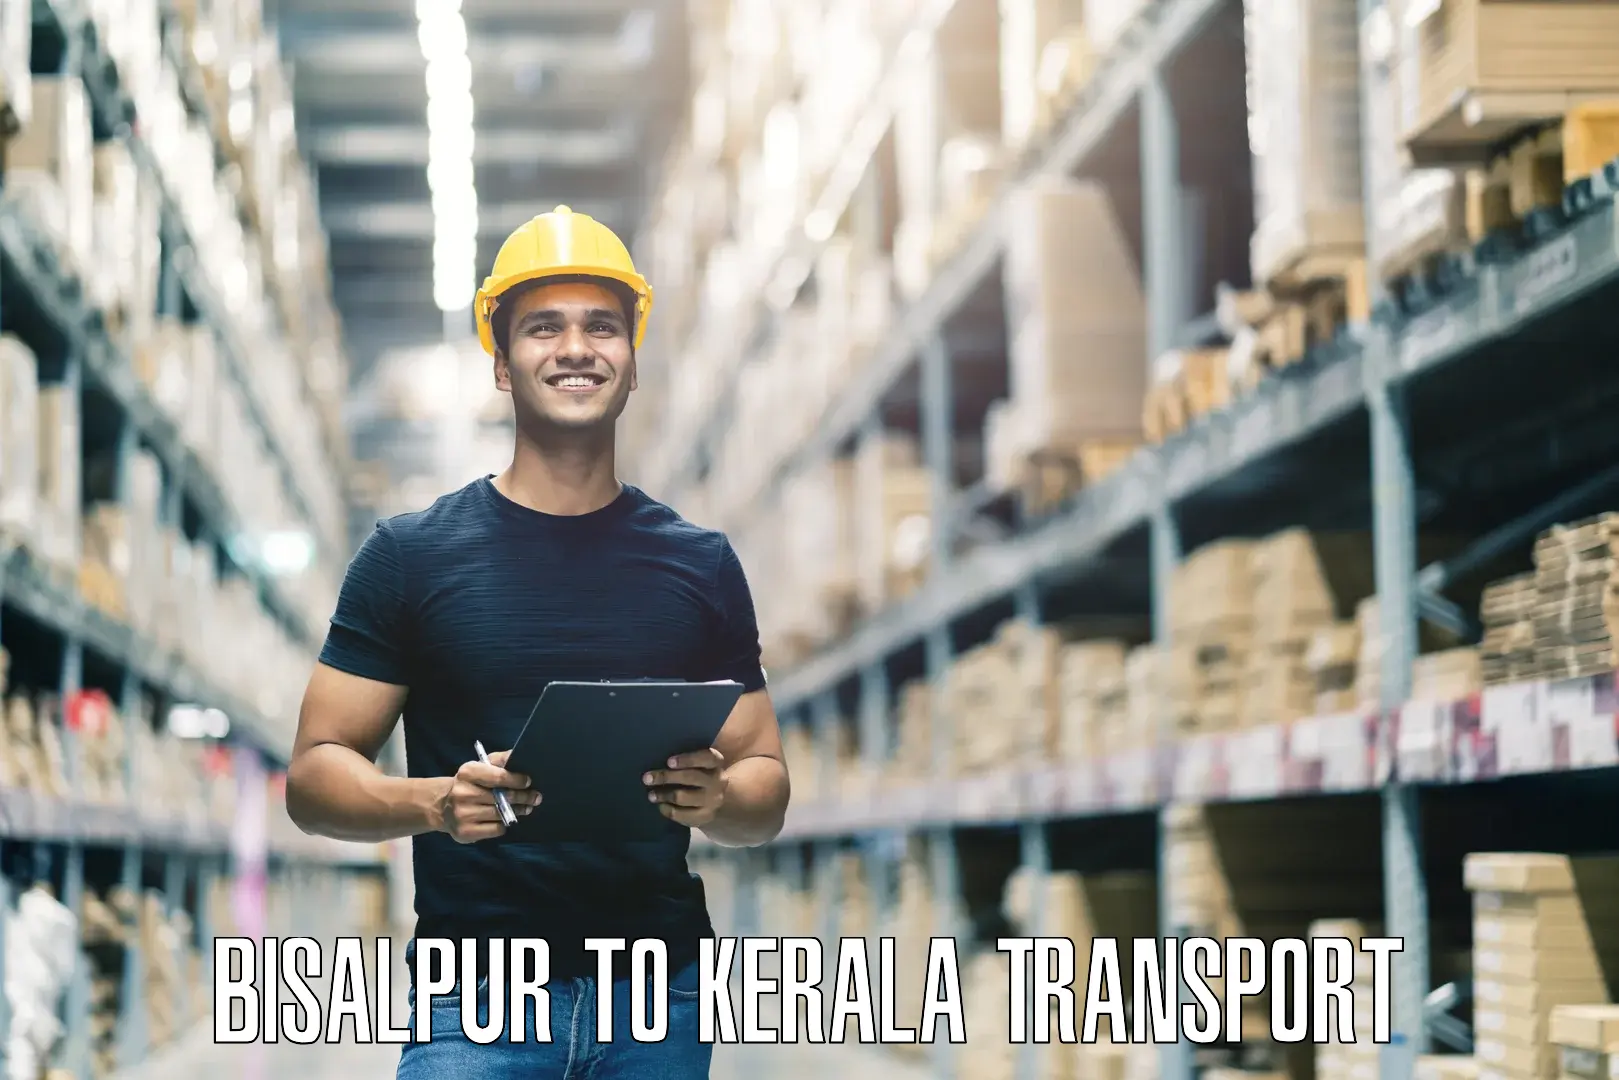 Lorry transport service Bisalpur to Kalluvathukkal